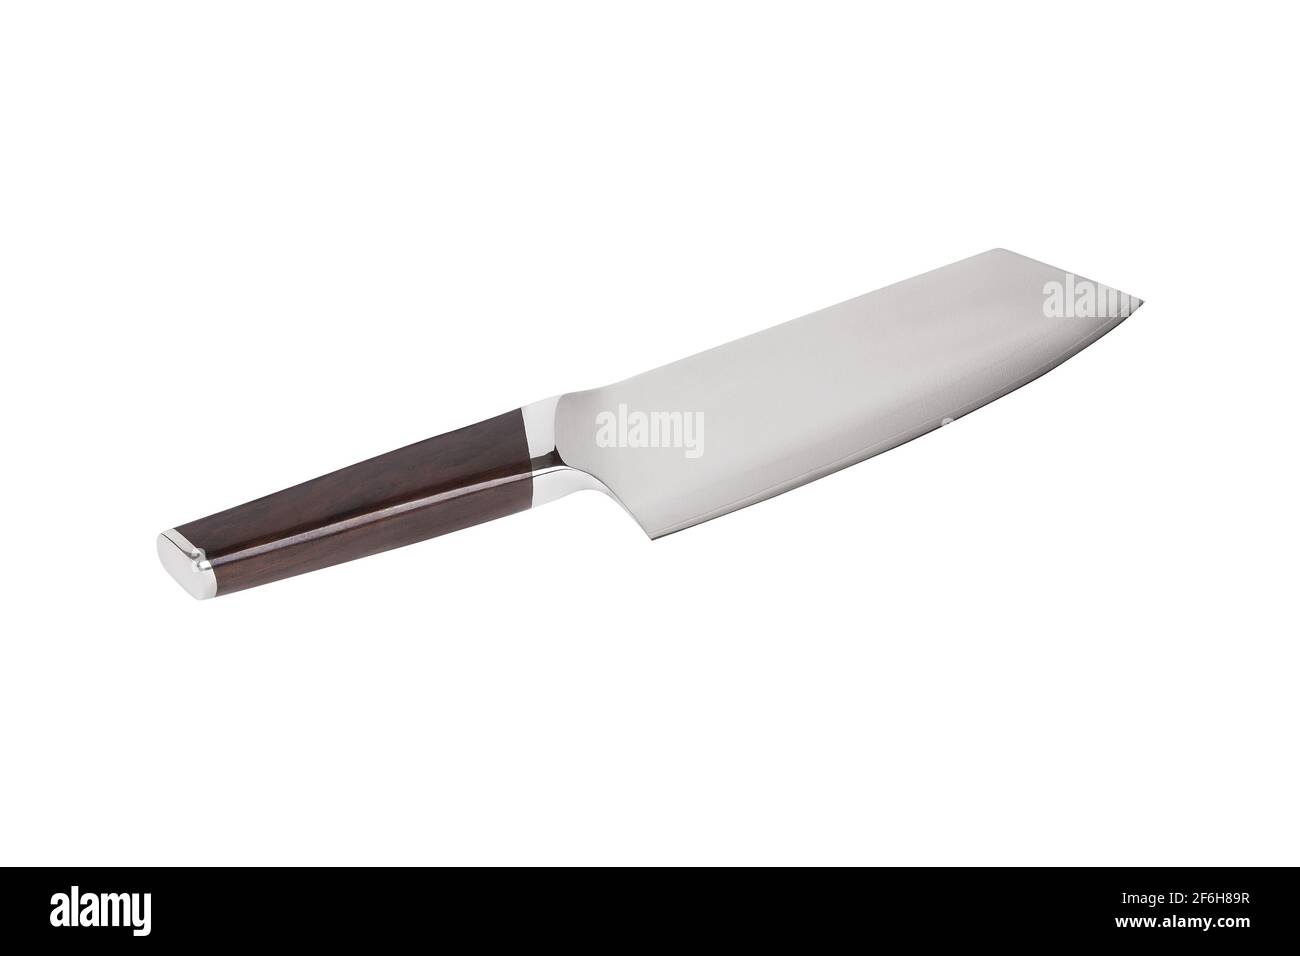 Cuchillo de cocina de acero inoxidable para picar carne. Cuchillo de carnicero aislado sobre fondo blanco. Foto de stock